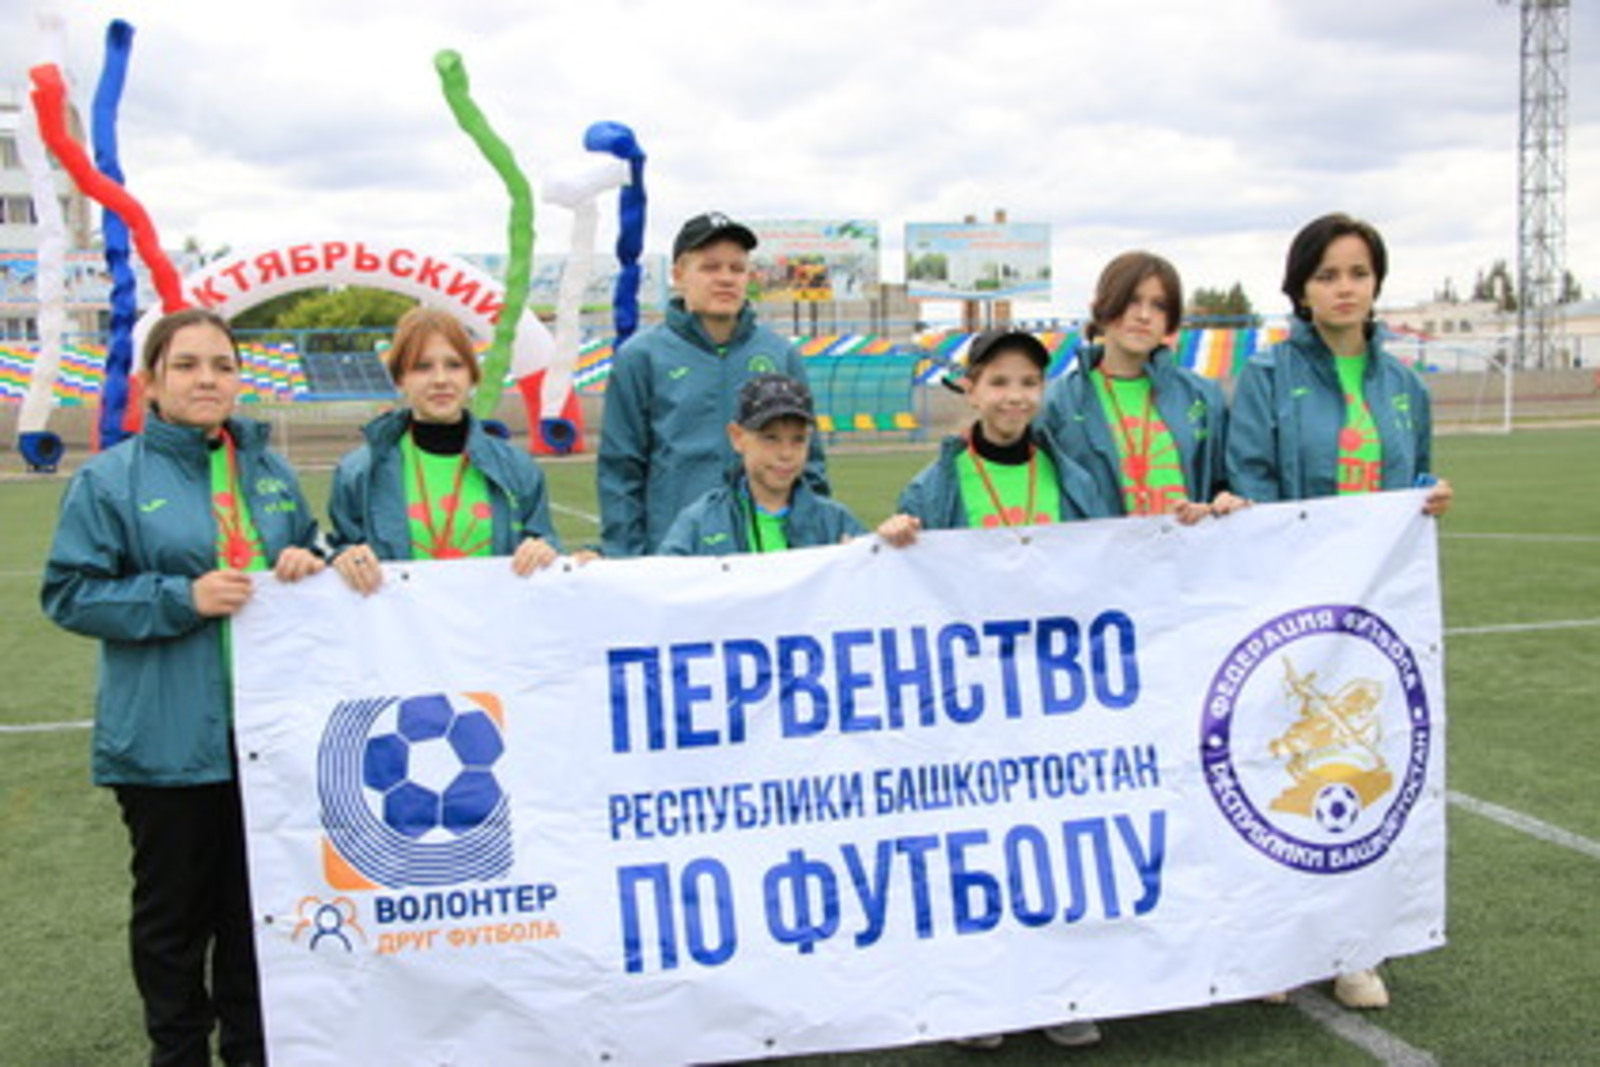 Определились победители Первенства Республики Башкортостан по футболу